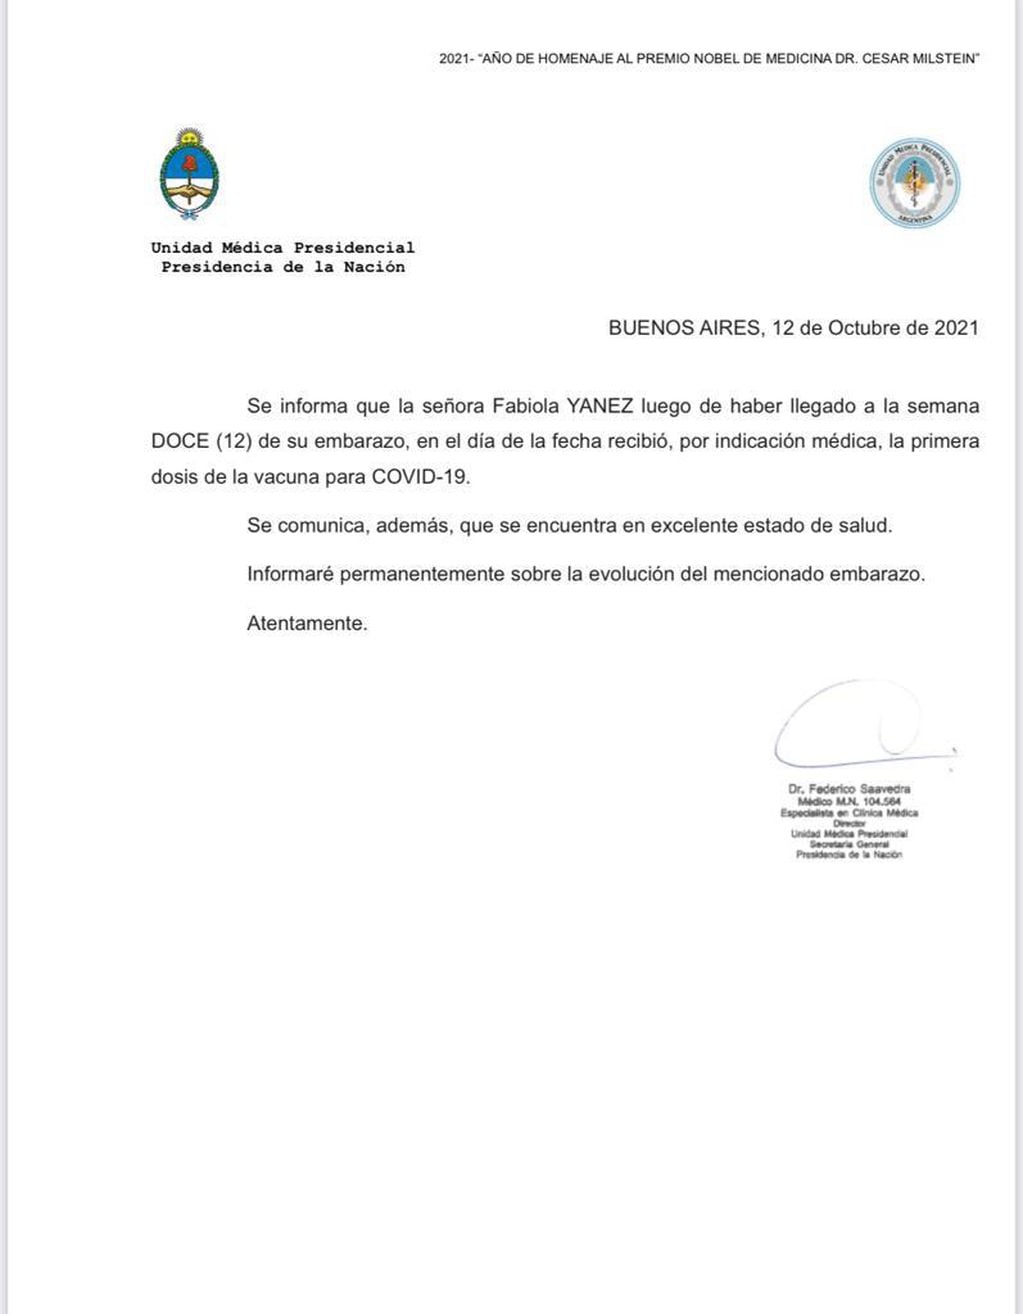 El comunicado de la Unidad Médica Presidencial.